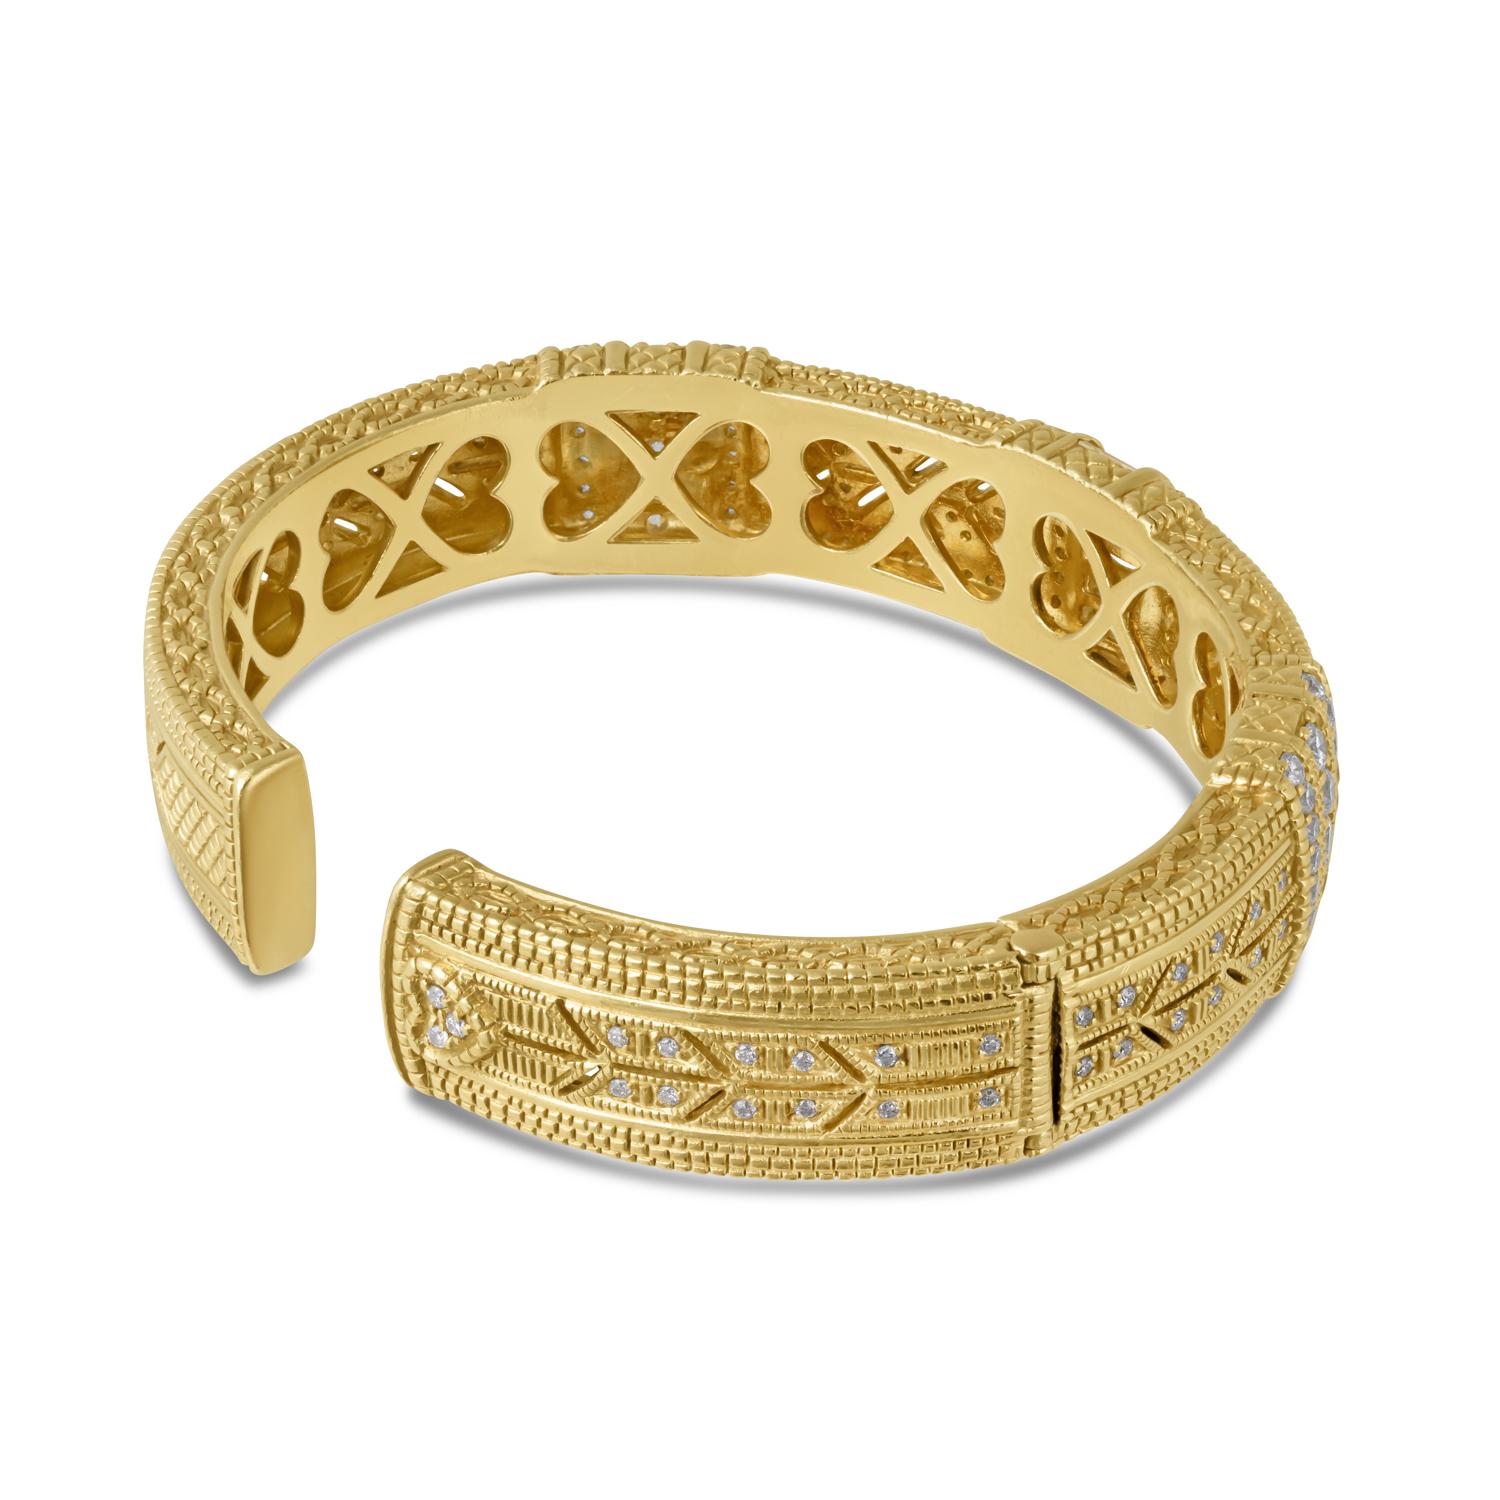 Élevez votre élégance avec le bracelet exquis Judith Ripka 18KYG Diamond Bangle. Cette superbe pièce, d'une sophistication intemporelle, est estampillée de la prestigieuse marque 18K et de la célèbre signature Judith Ripka. Sa fermeture à charnière